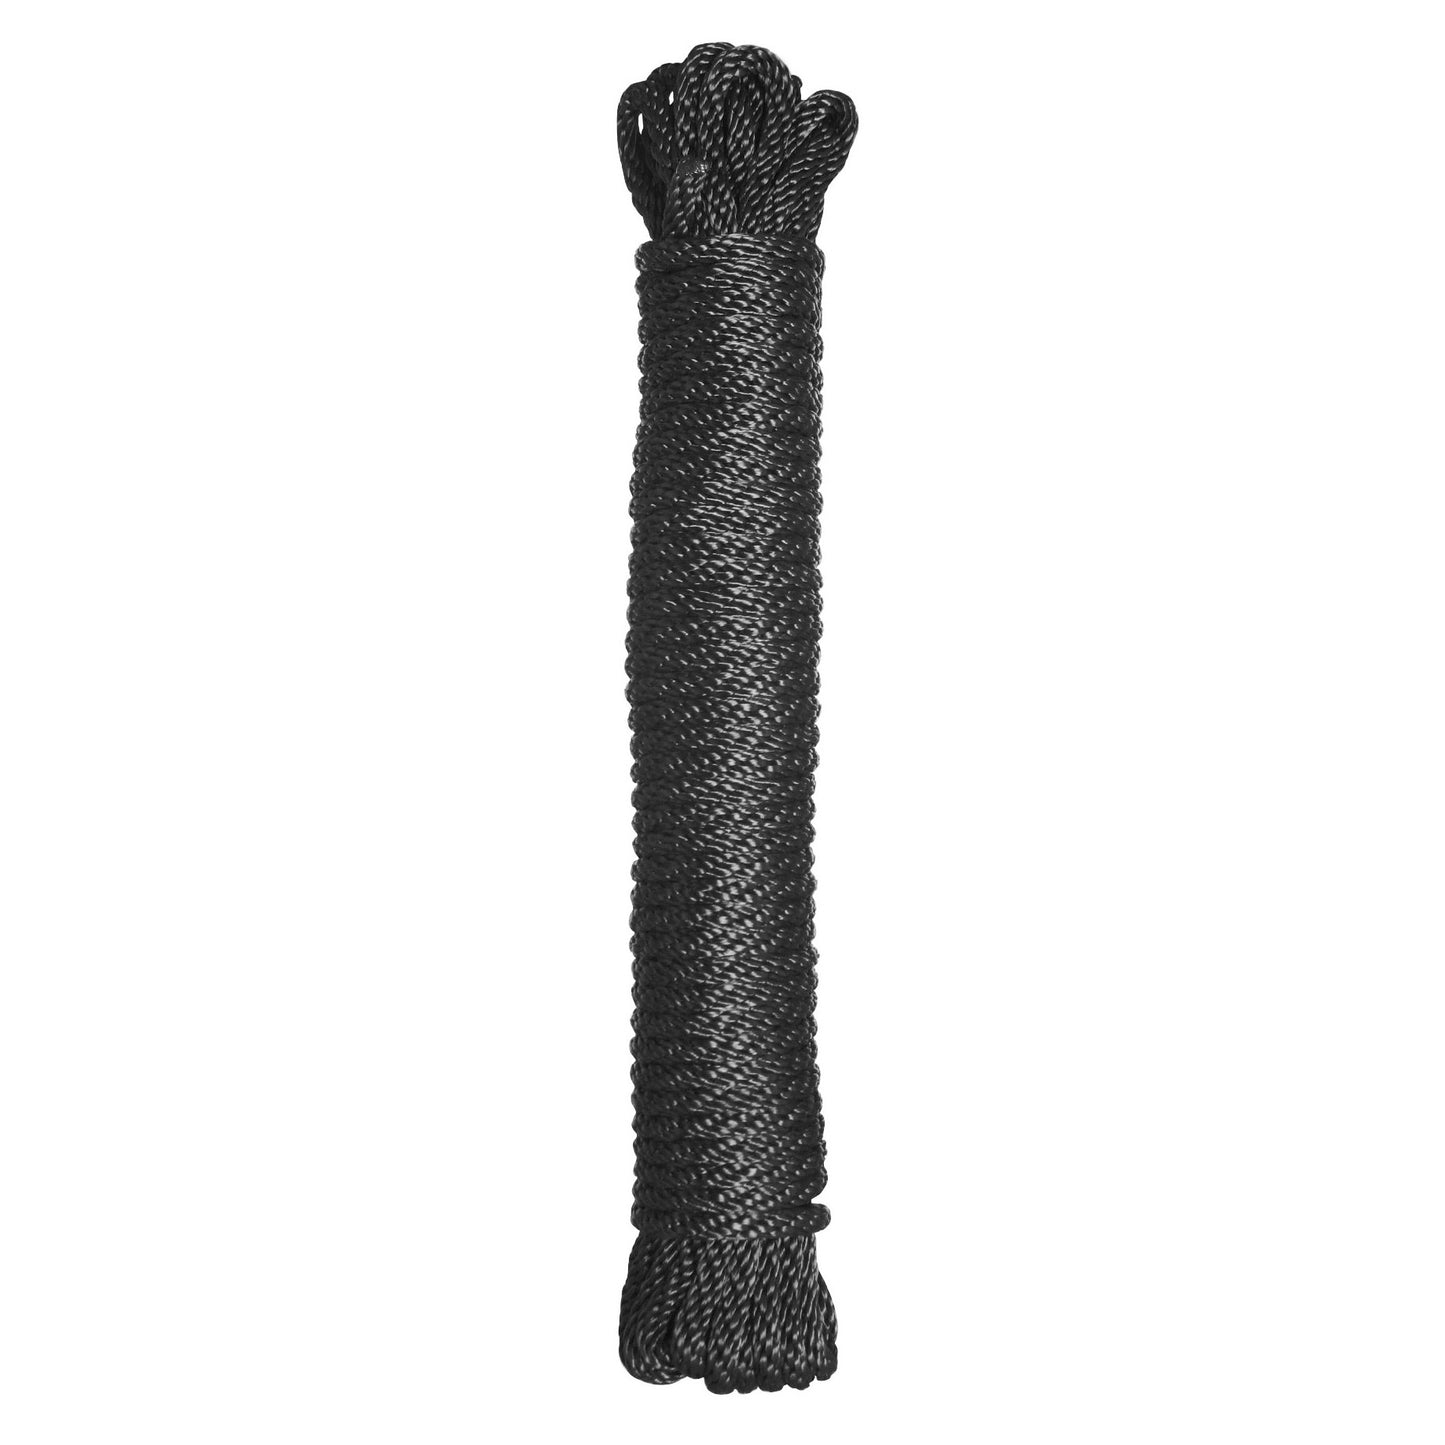 Premium Black Nylon Bondage Rope- 50 Feet - UABDSM